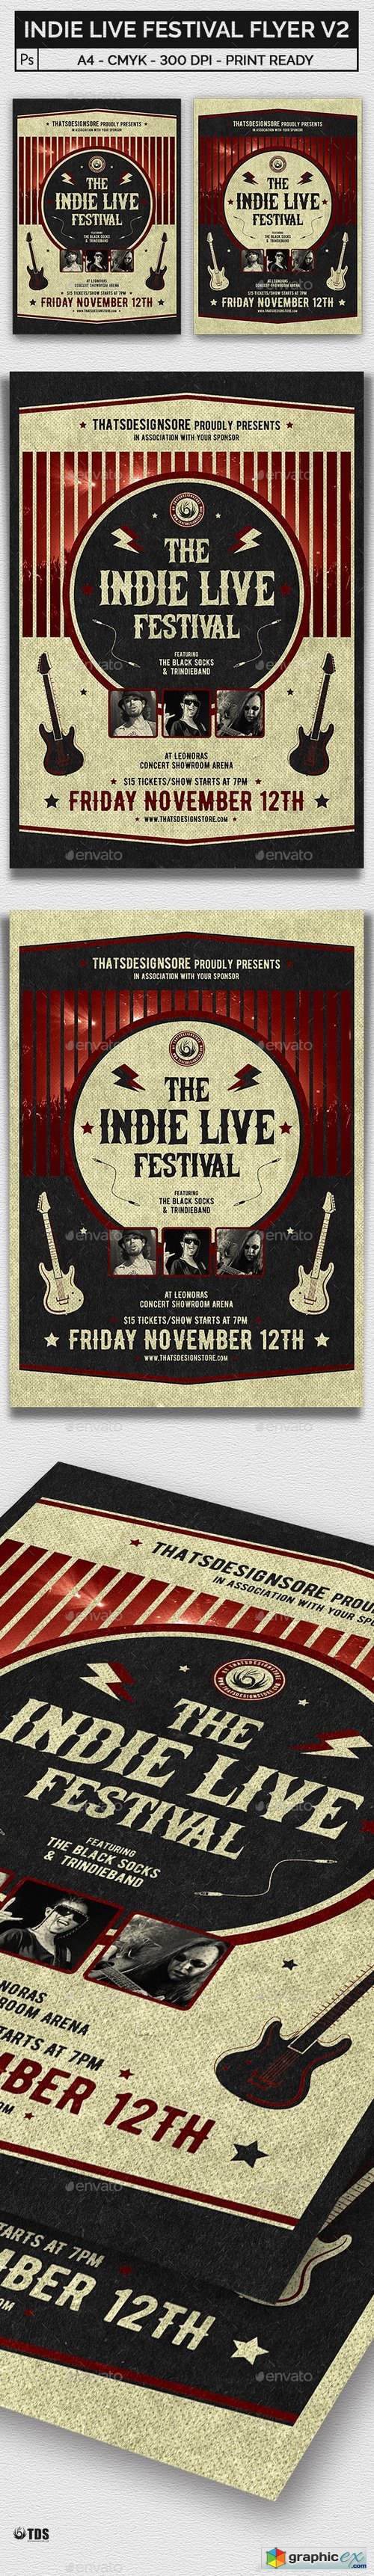 Indie Live Festival Flyer Template V2